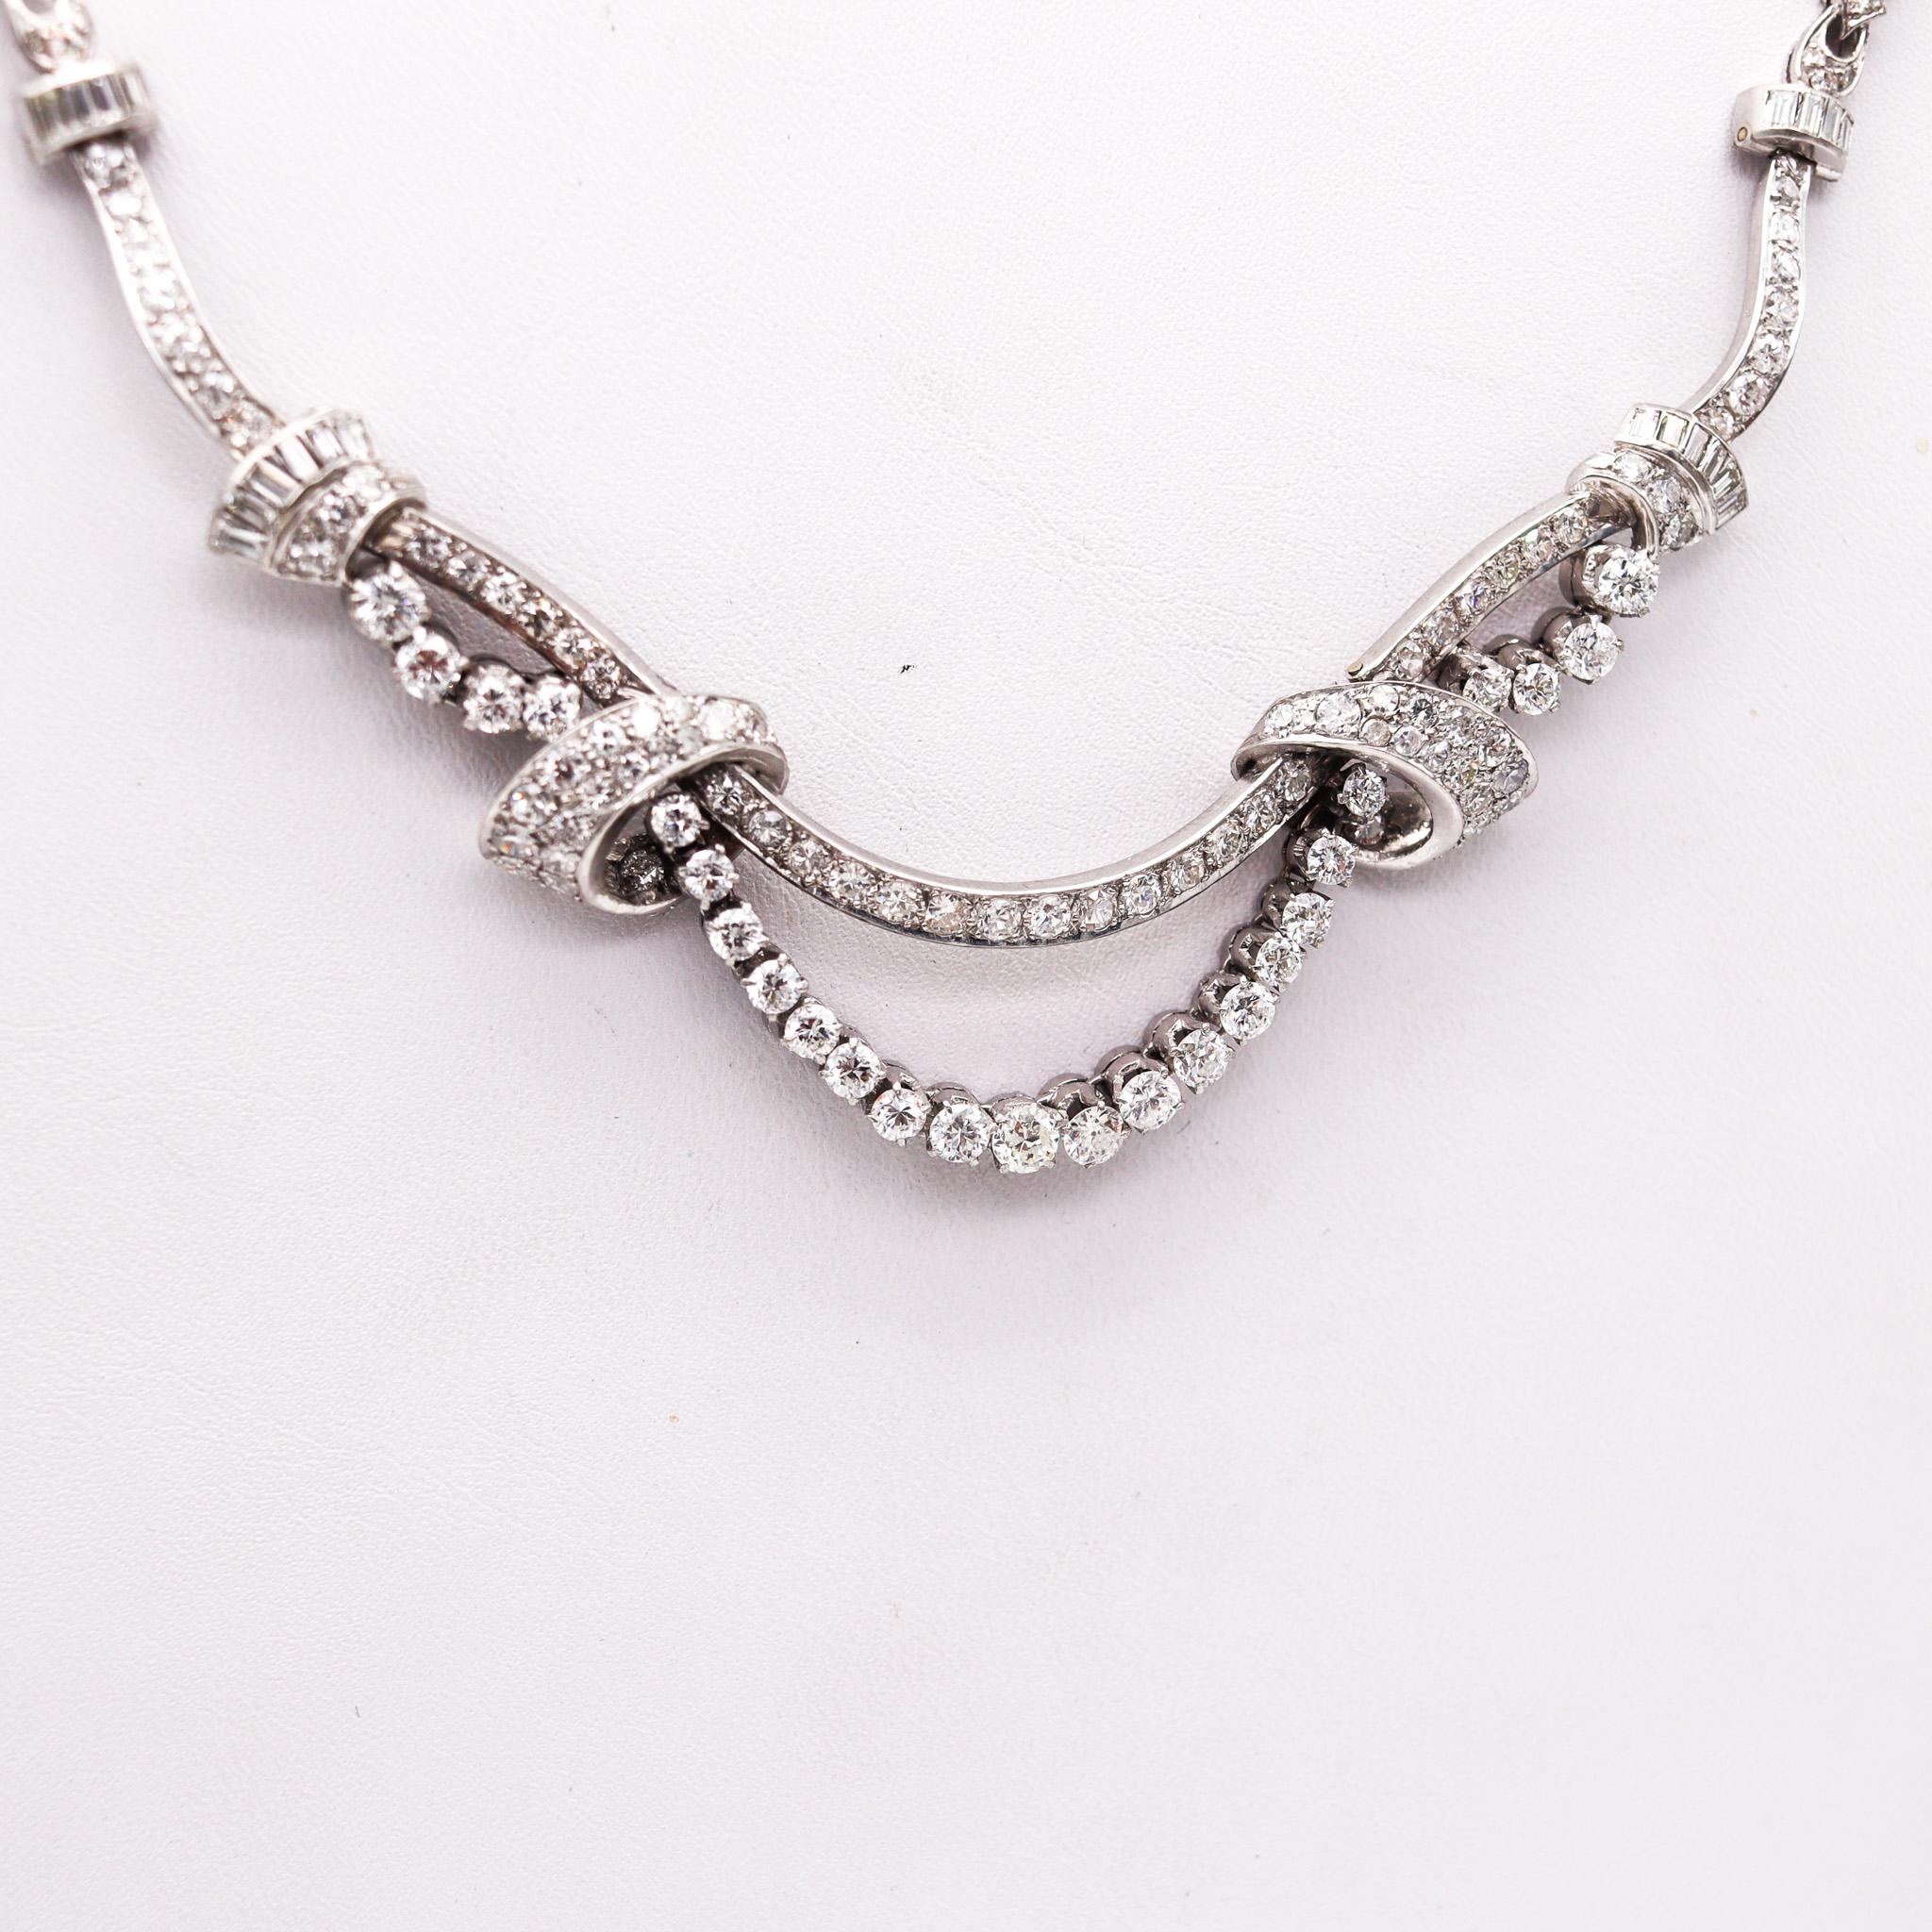 Art-Deco-Girlanden-Halskette mit Diamanten.

Außergewöhnliches, mit Diamanten besetztes Collier, das in Amerika während der Art-Deco-Periode im Jahre 1935 geschaffen wurde. Dieses wunderschöne Filmstar-Halsband wurde mit doppelten Girlanden aus